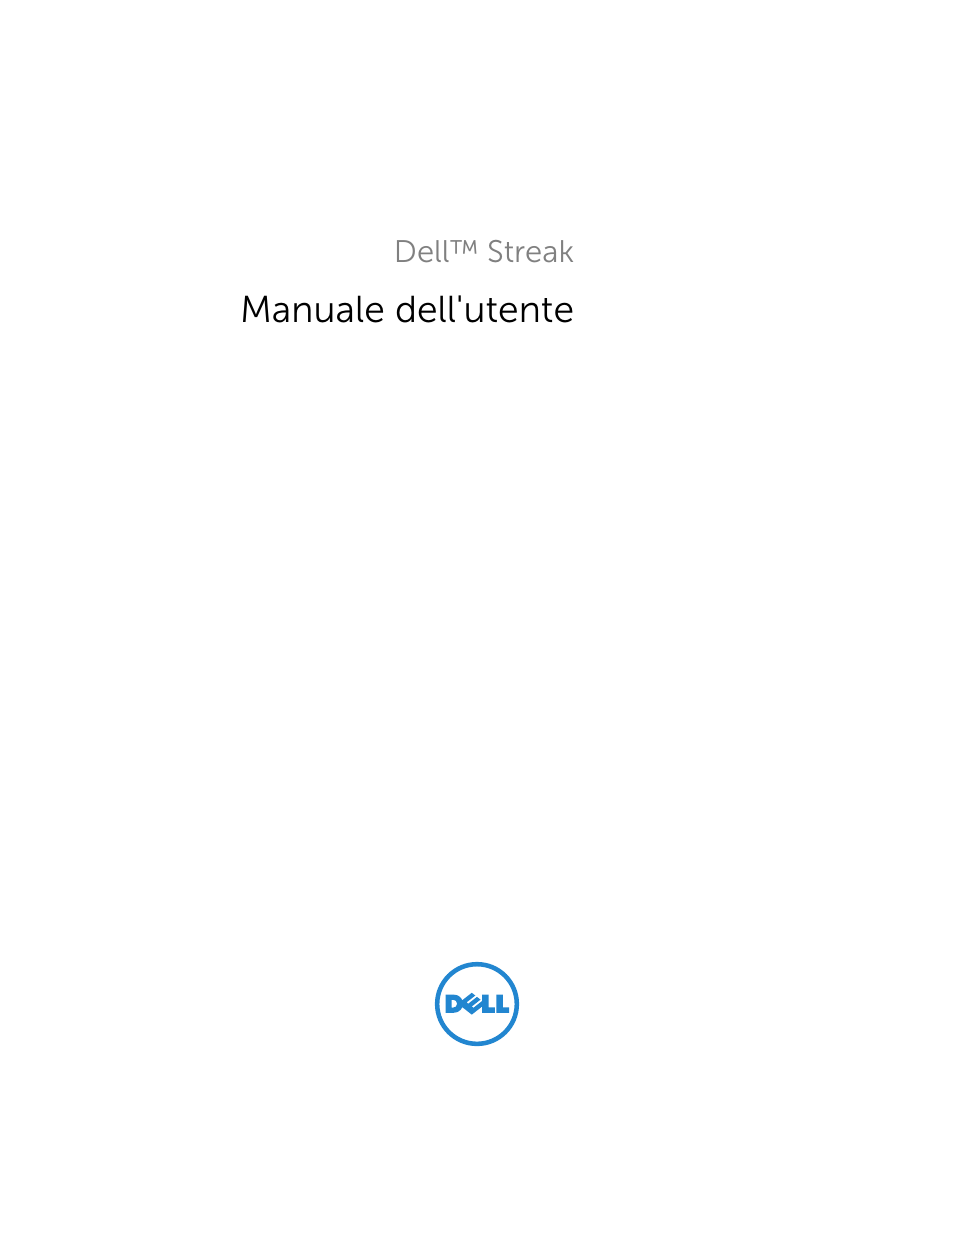 Dell STREAK mobile Manuale d'uso | Pagine: 173